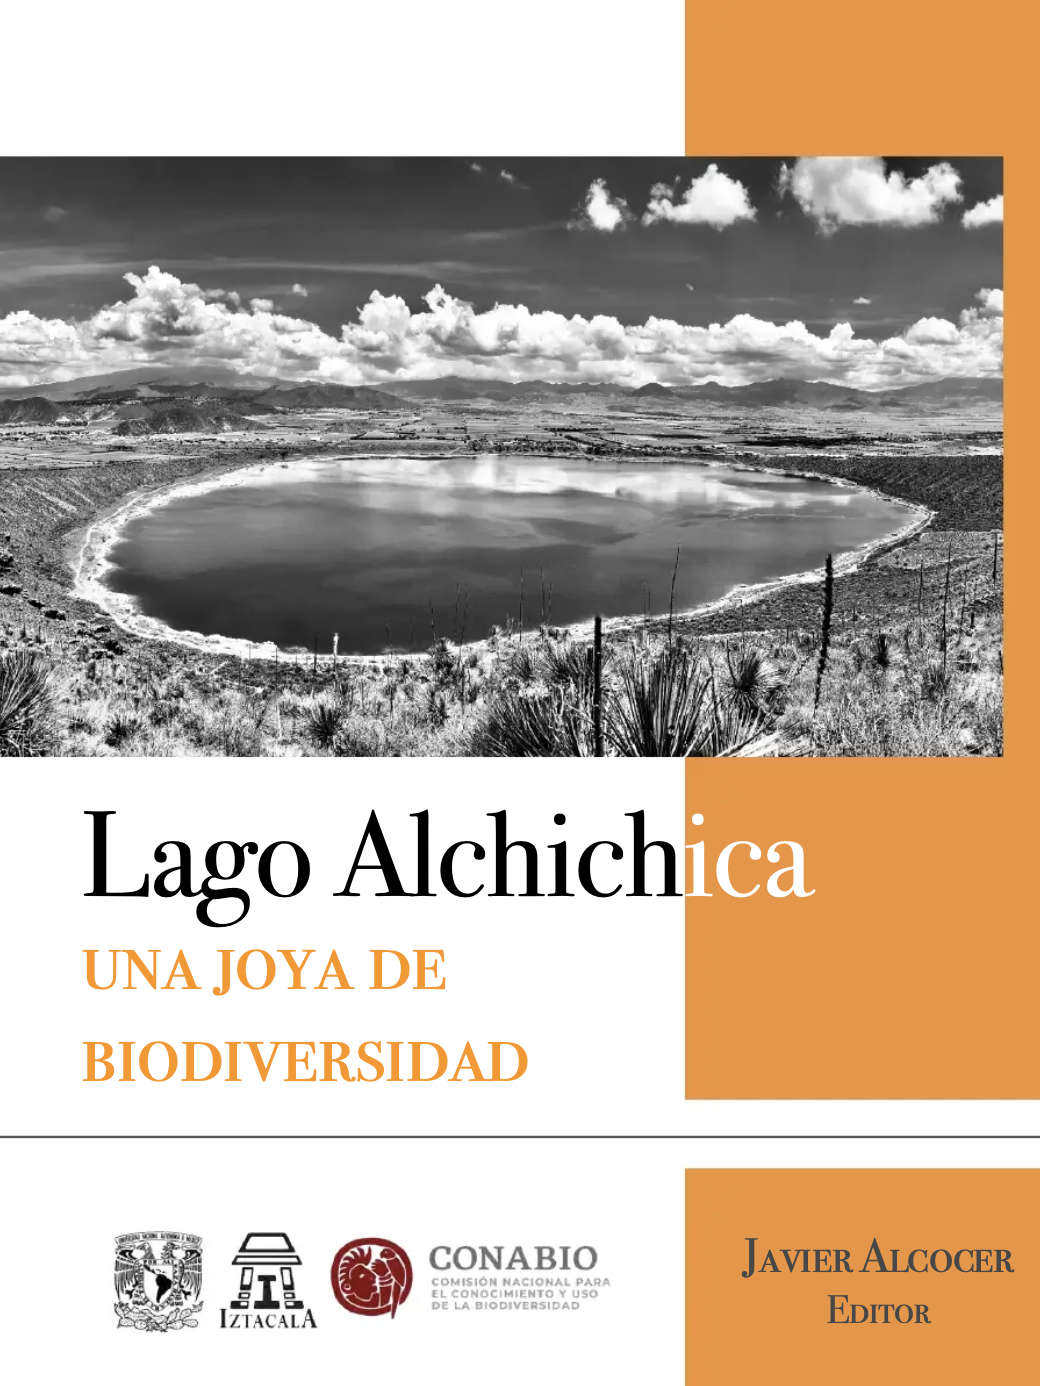 El lago Alchichica en la historia y la memoria colectiva